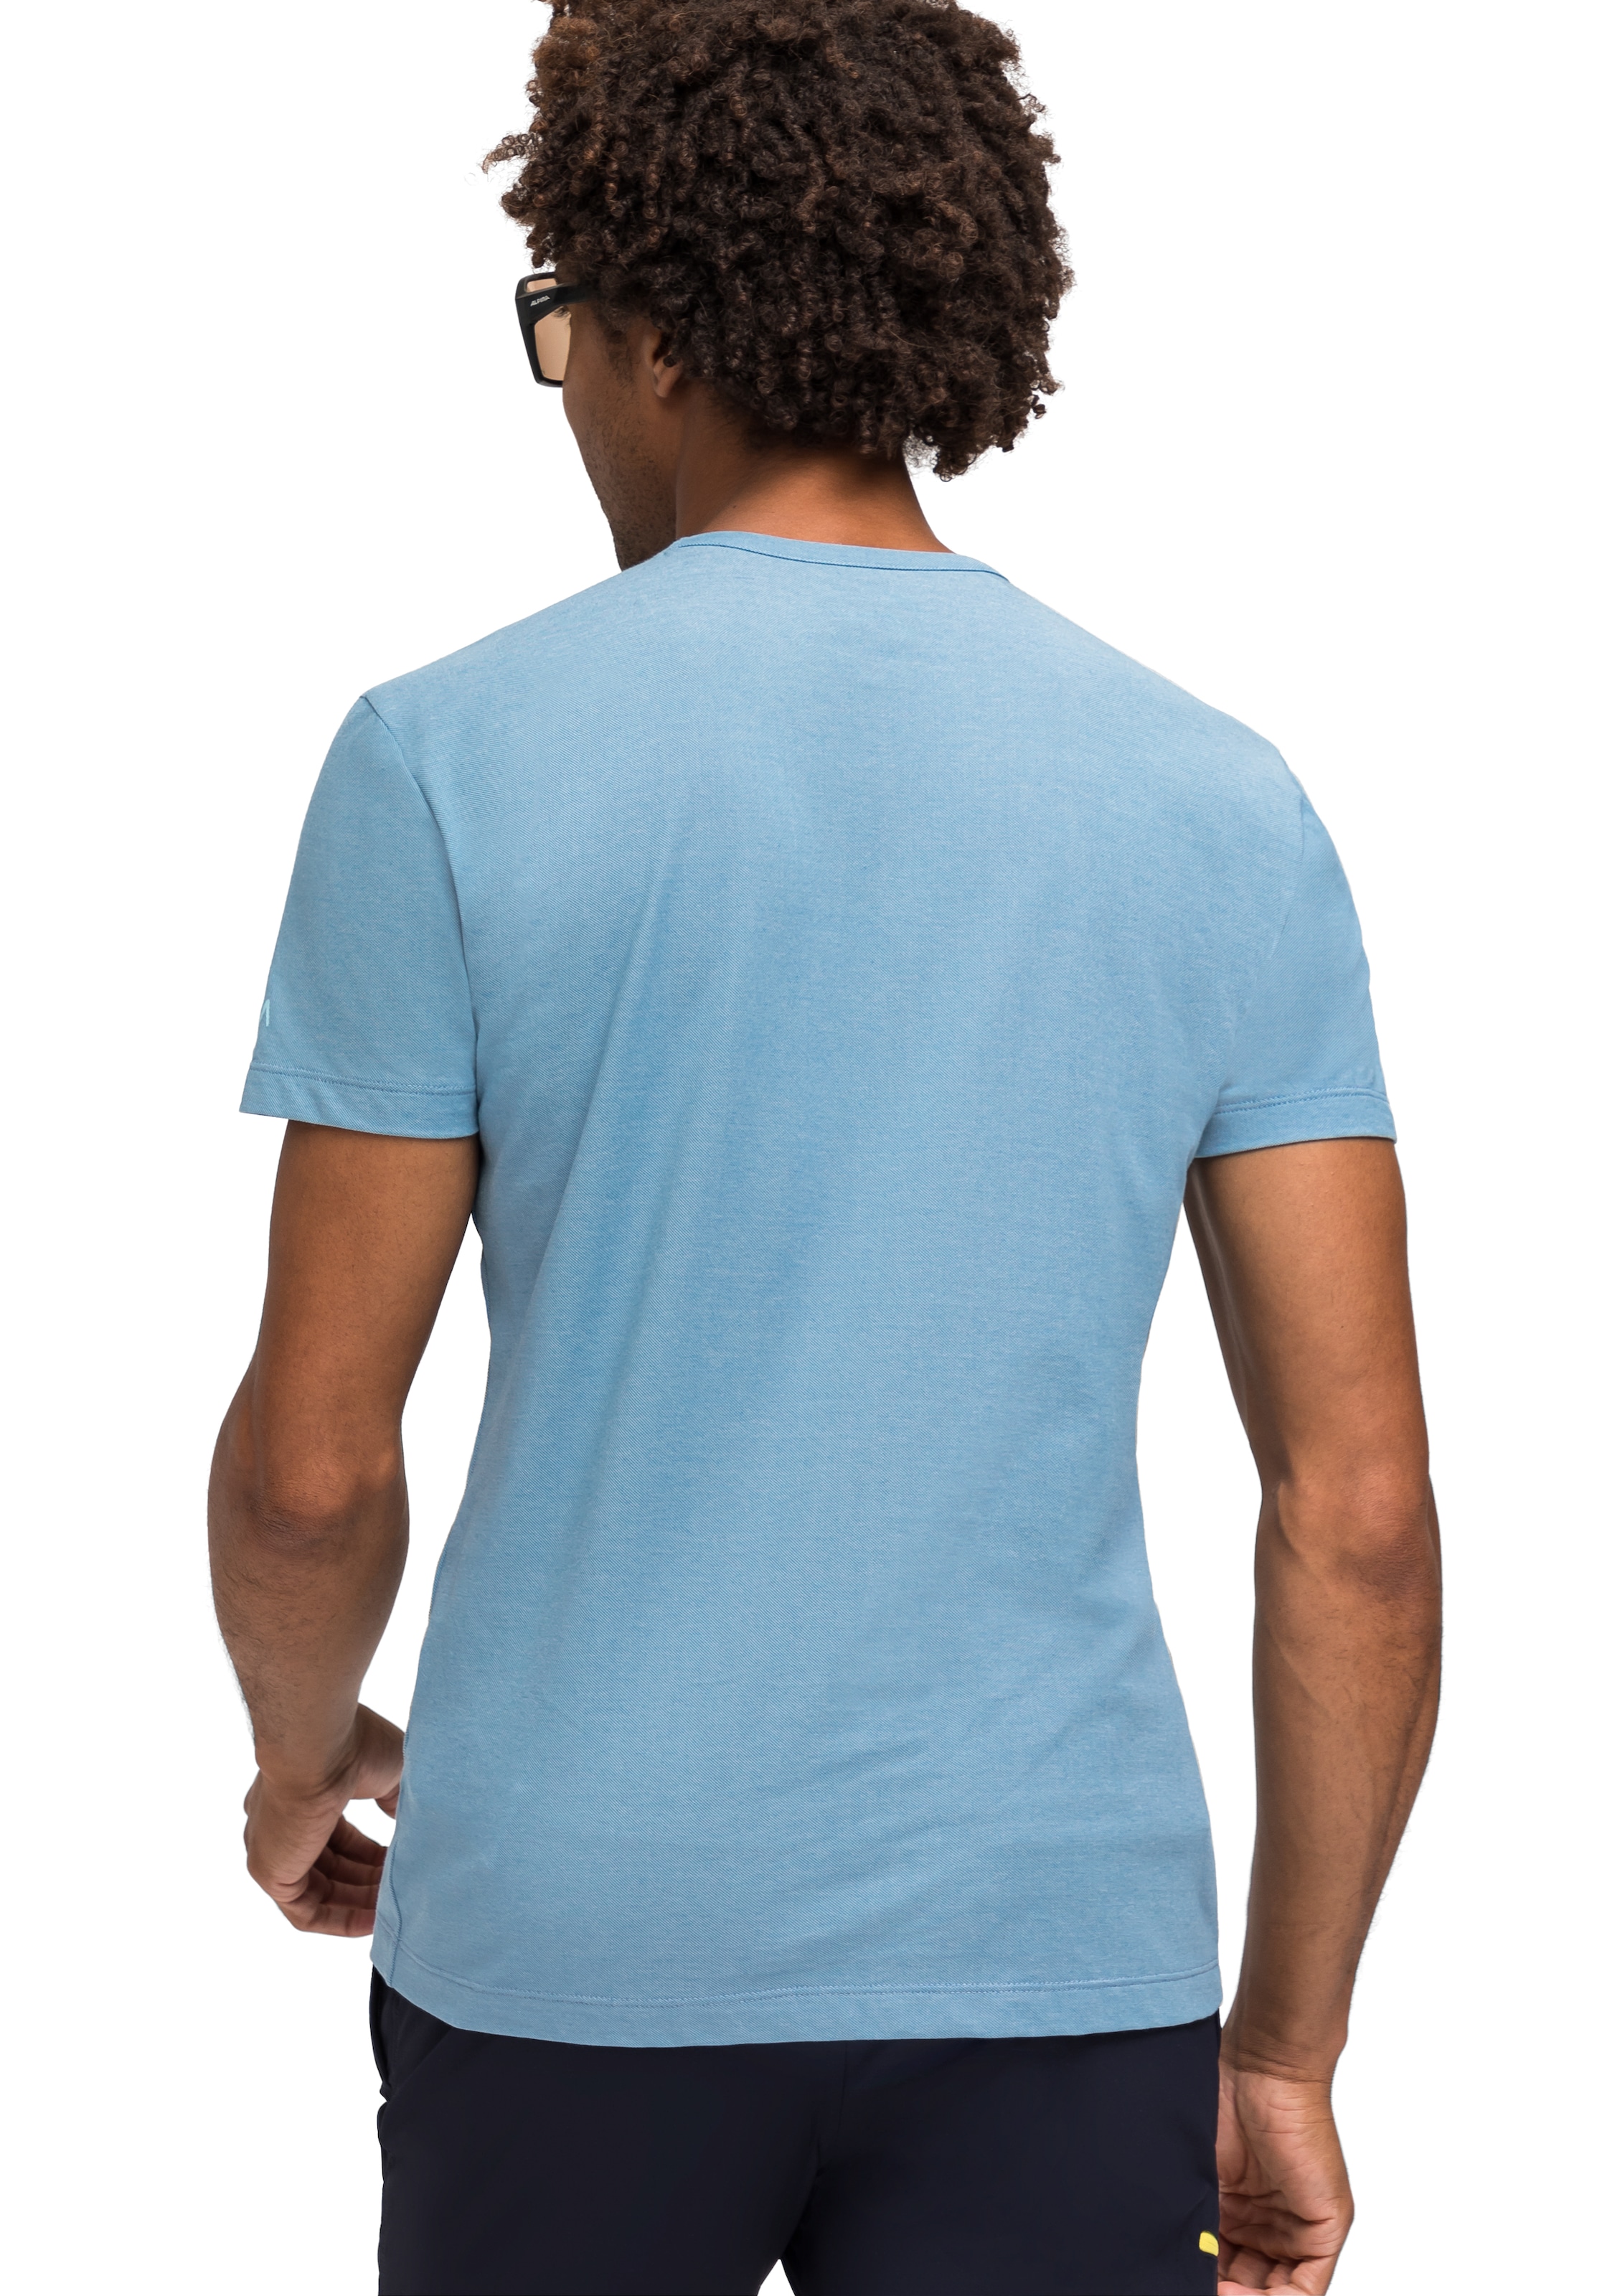 Maier Sports T-Shirt »Burgeis 17 M«, Herren Kurzarmshirt mit Print für Wandern und Freizeit